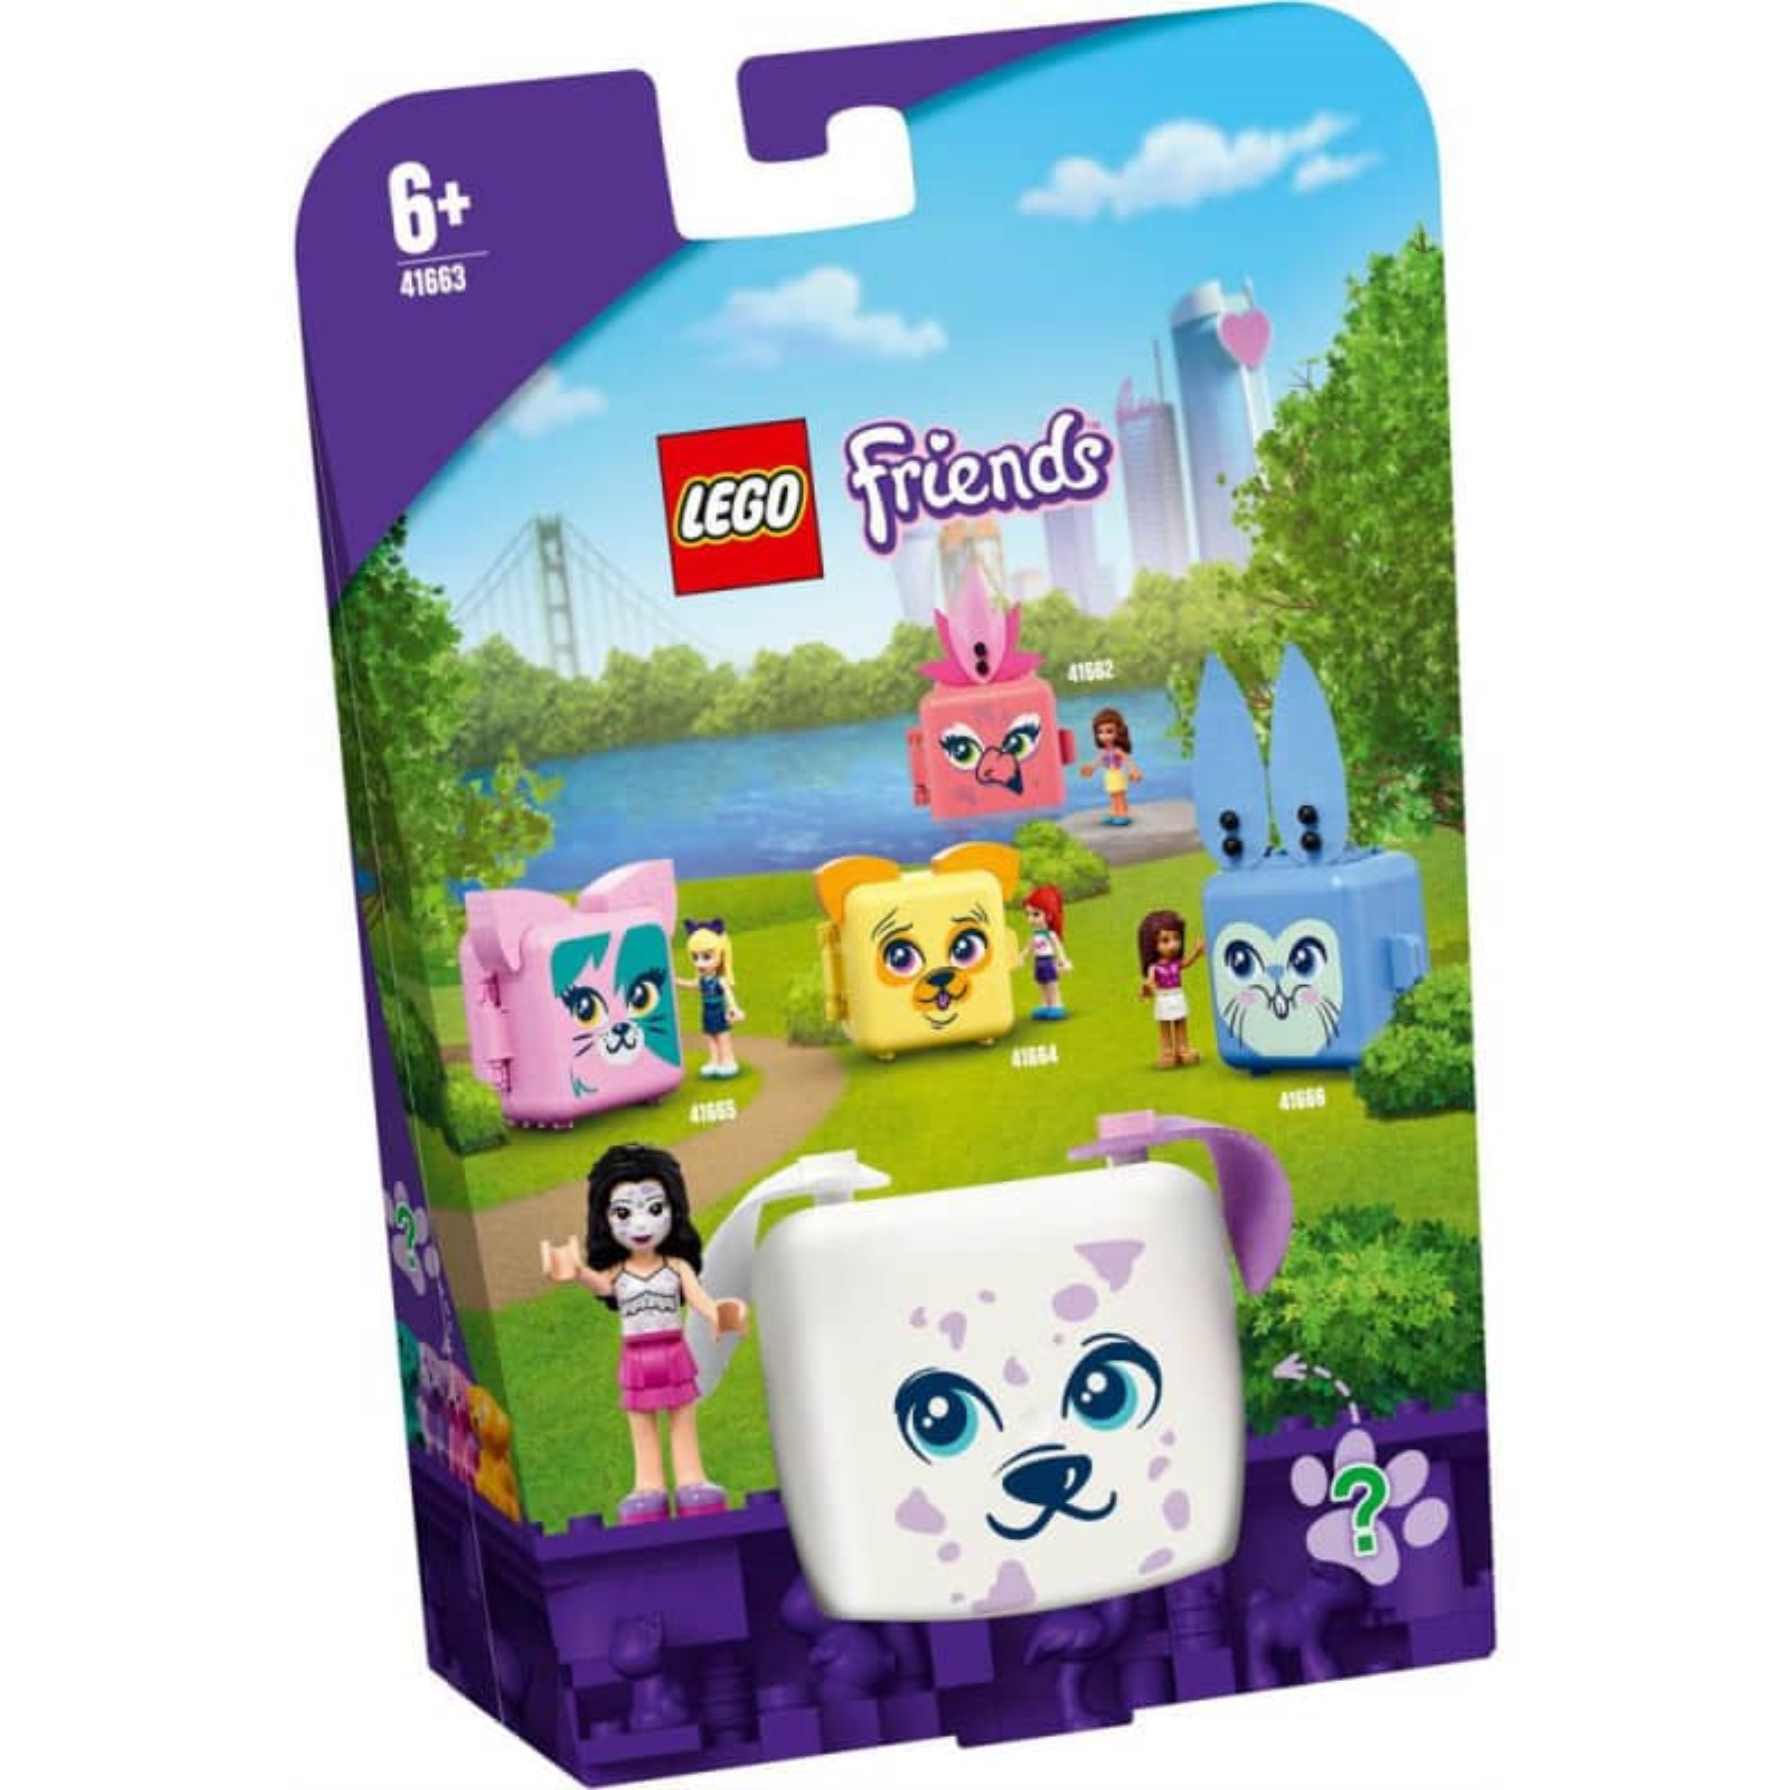 Comprar LEGO Friends Cubo Dálmata de 41663 | Toy Planet